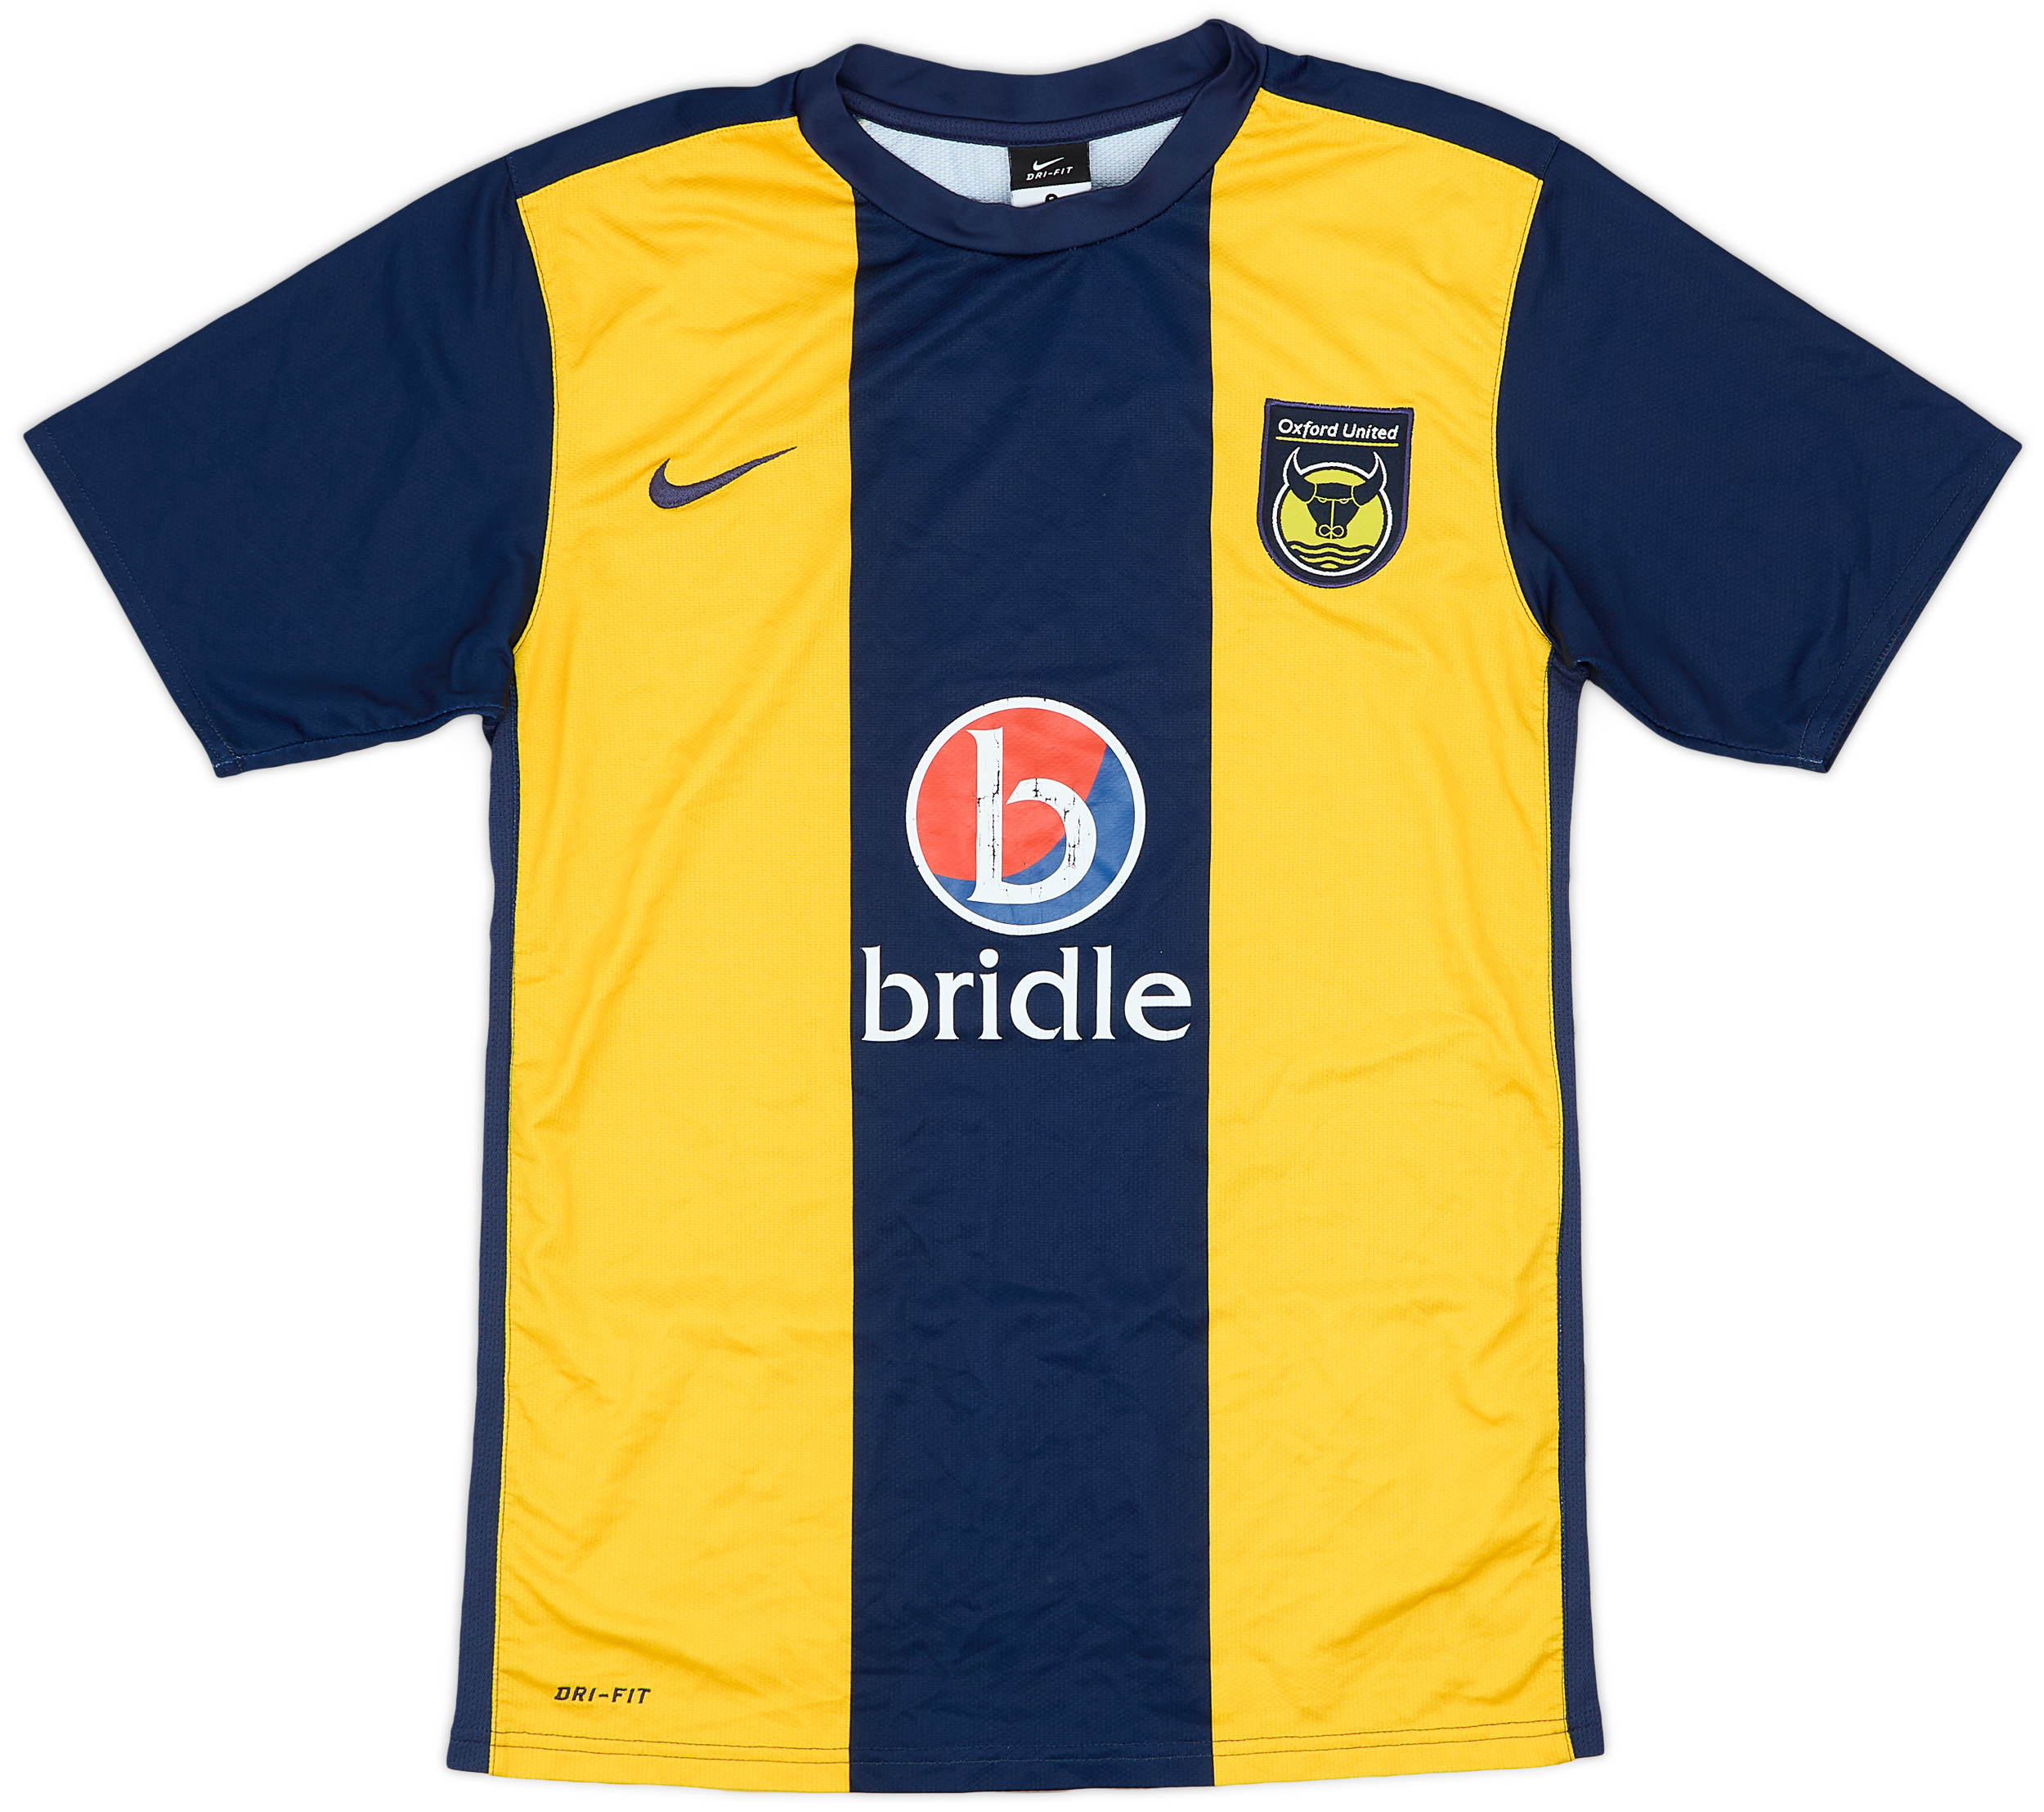 Oxford United  home Camiseta (Original)